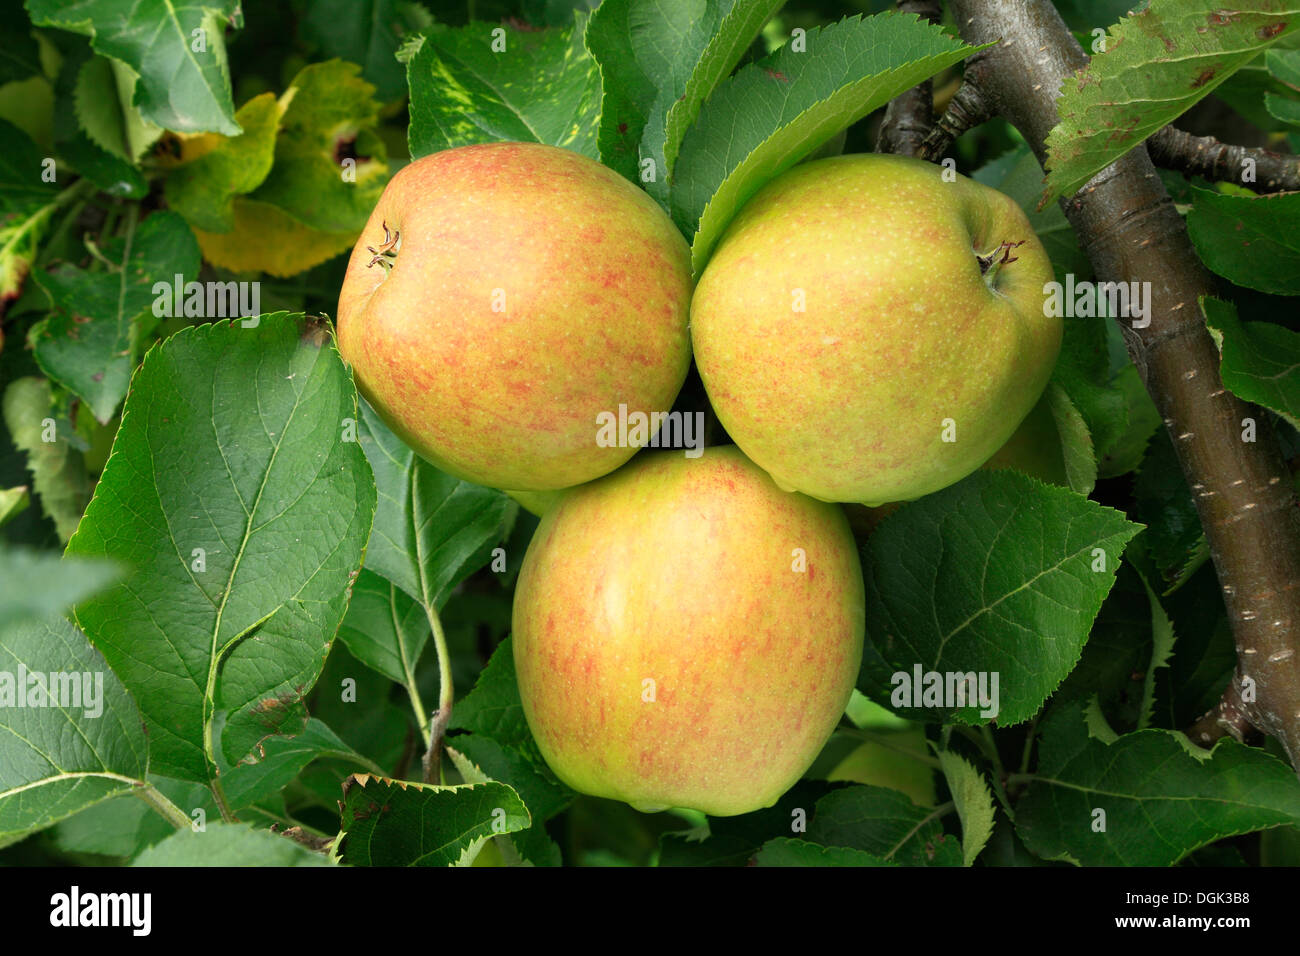 La pomme 'Gold' de la Couronne, les pommes Malus domestica variété varieties growing on tree Banque D'Images